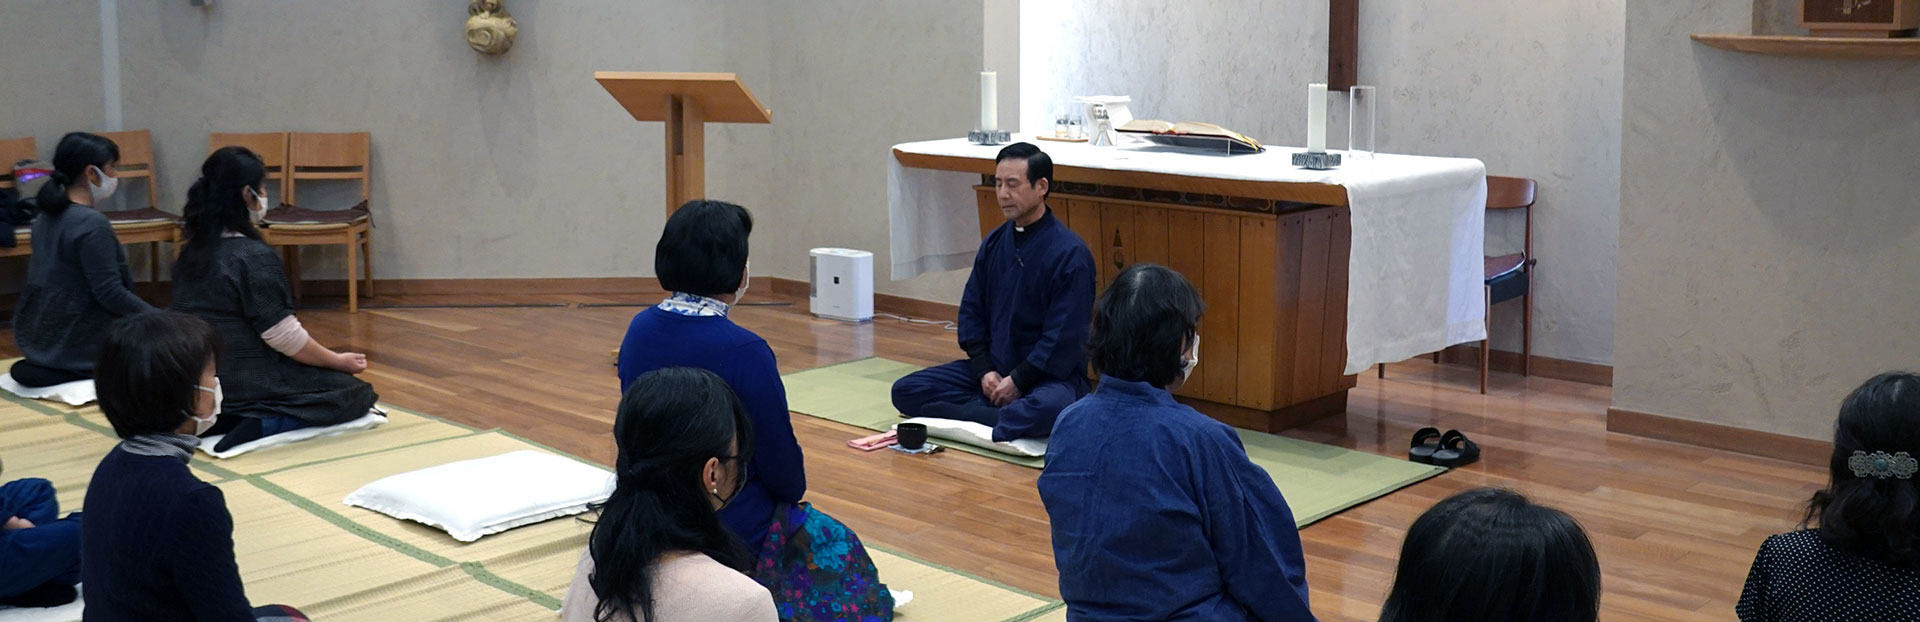 Christian Vipassana Meditation